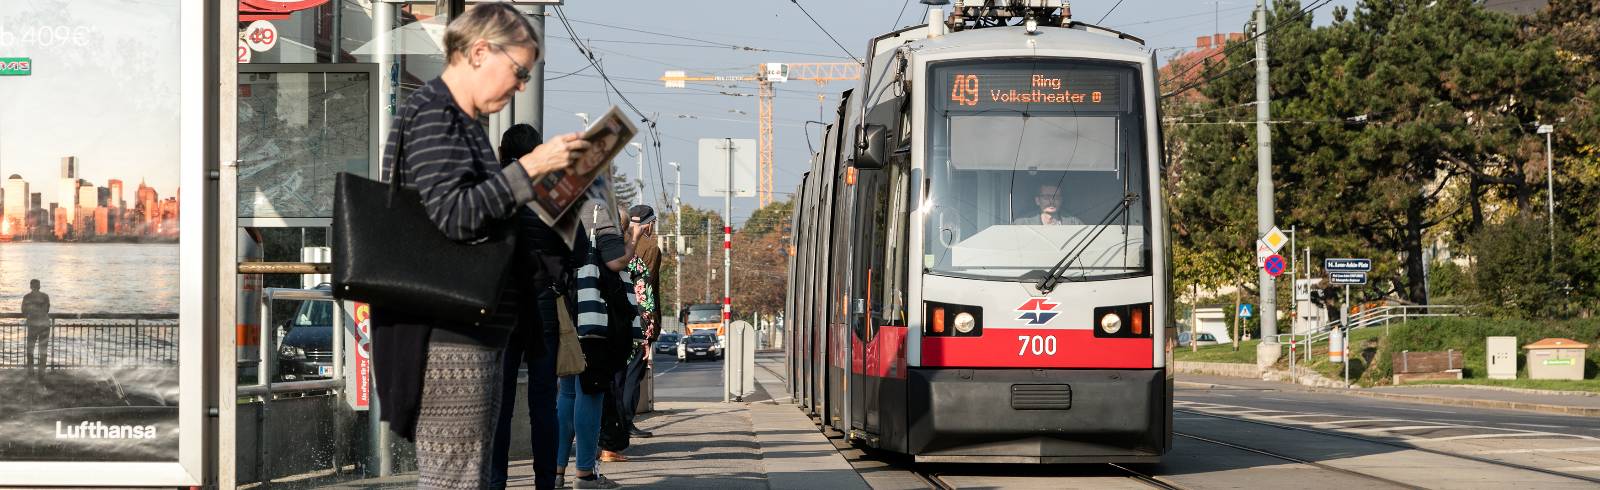 Kran verursacht Straßenbahn-Chaos in Wien